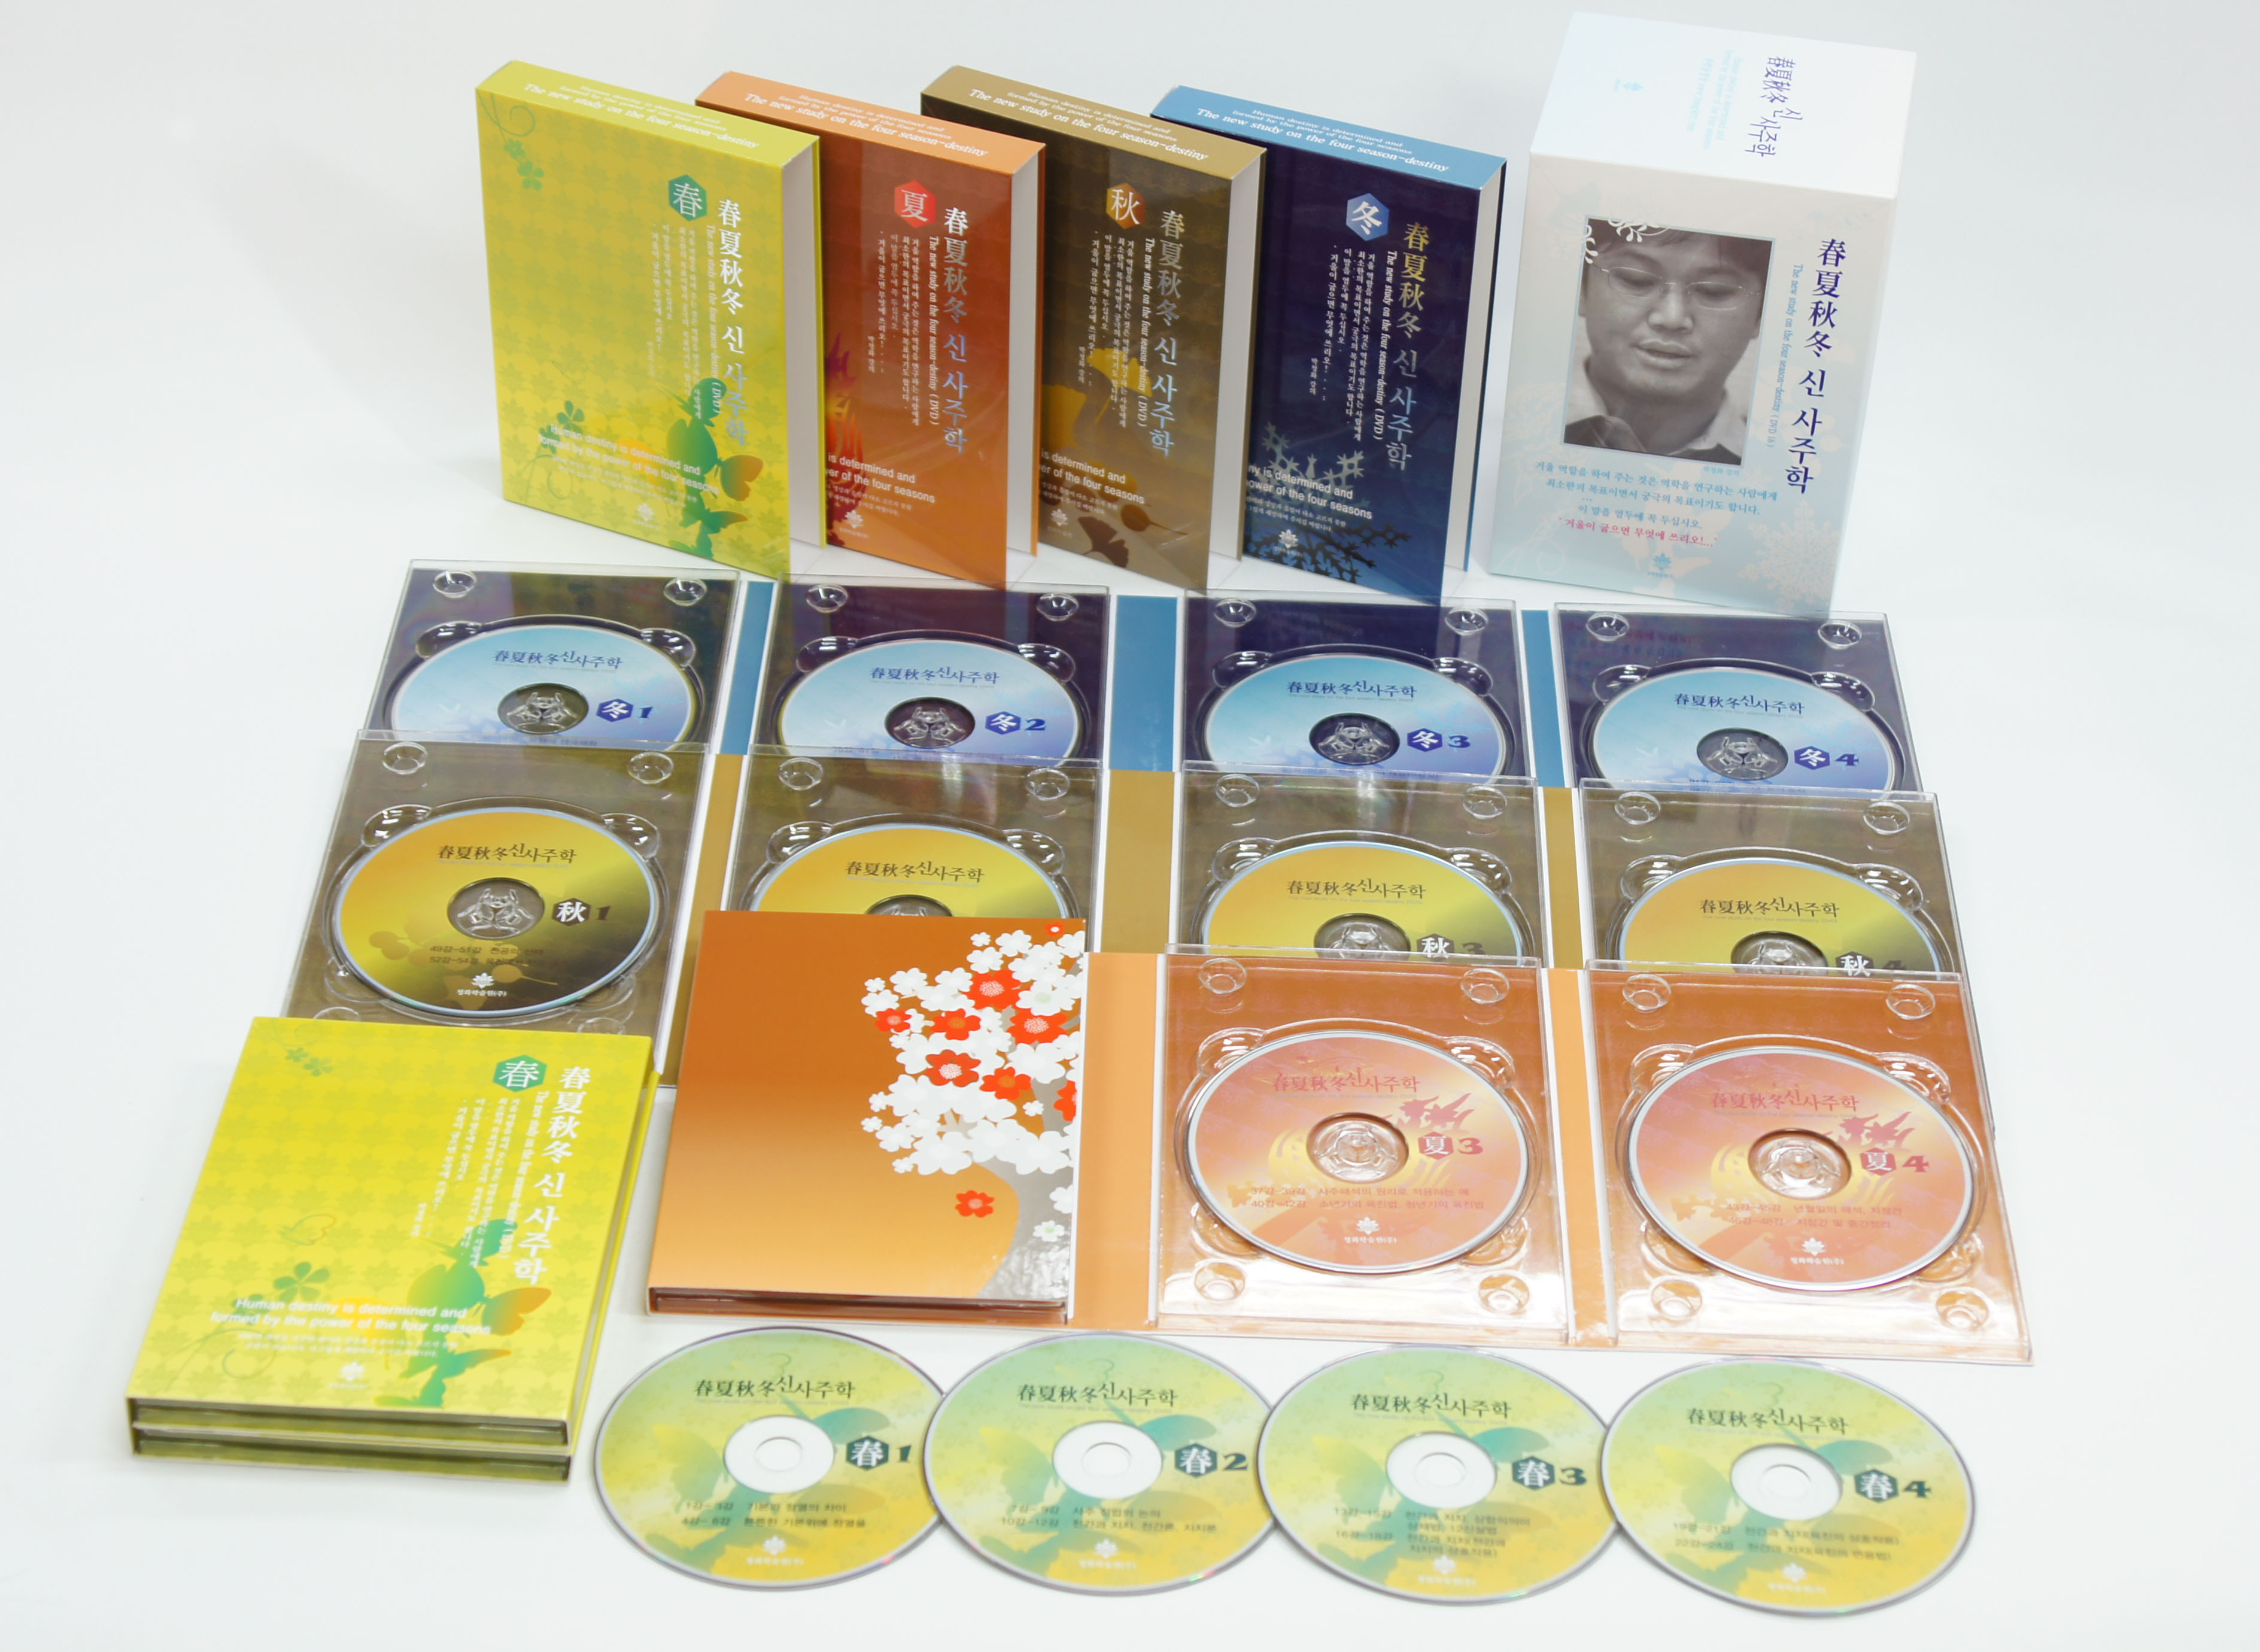 shop99,춘하추동 신사주학 2004 DVD